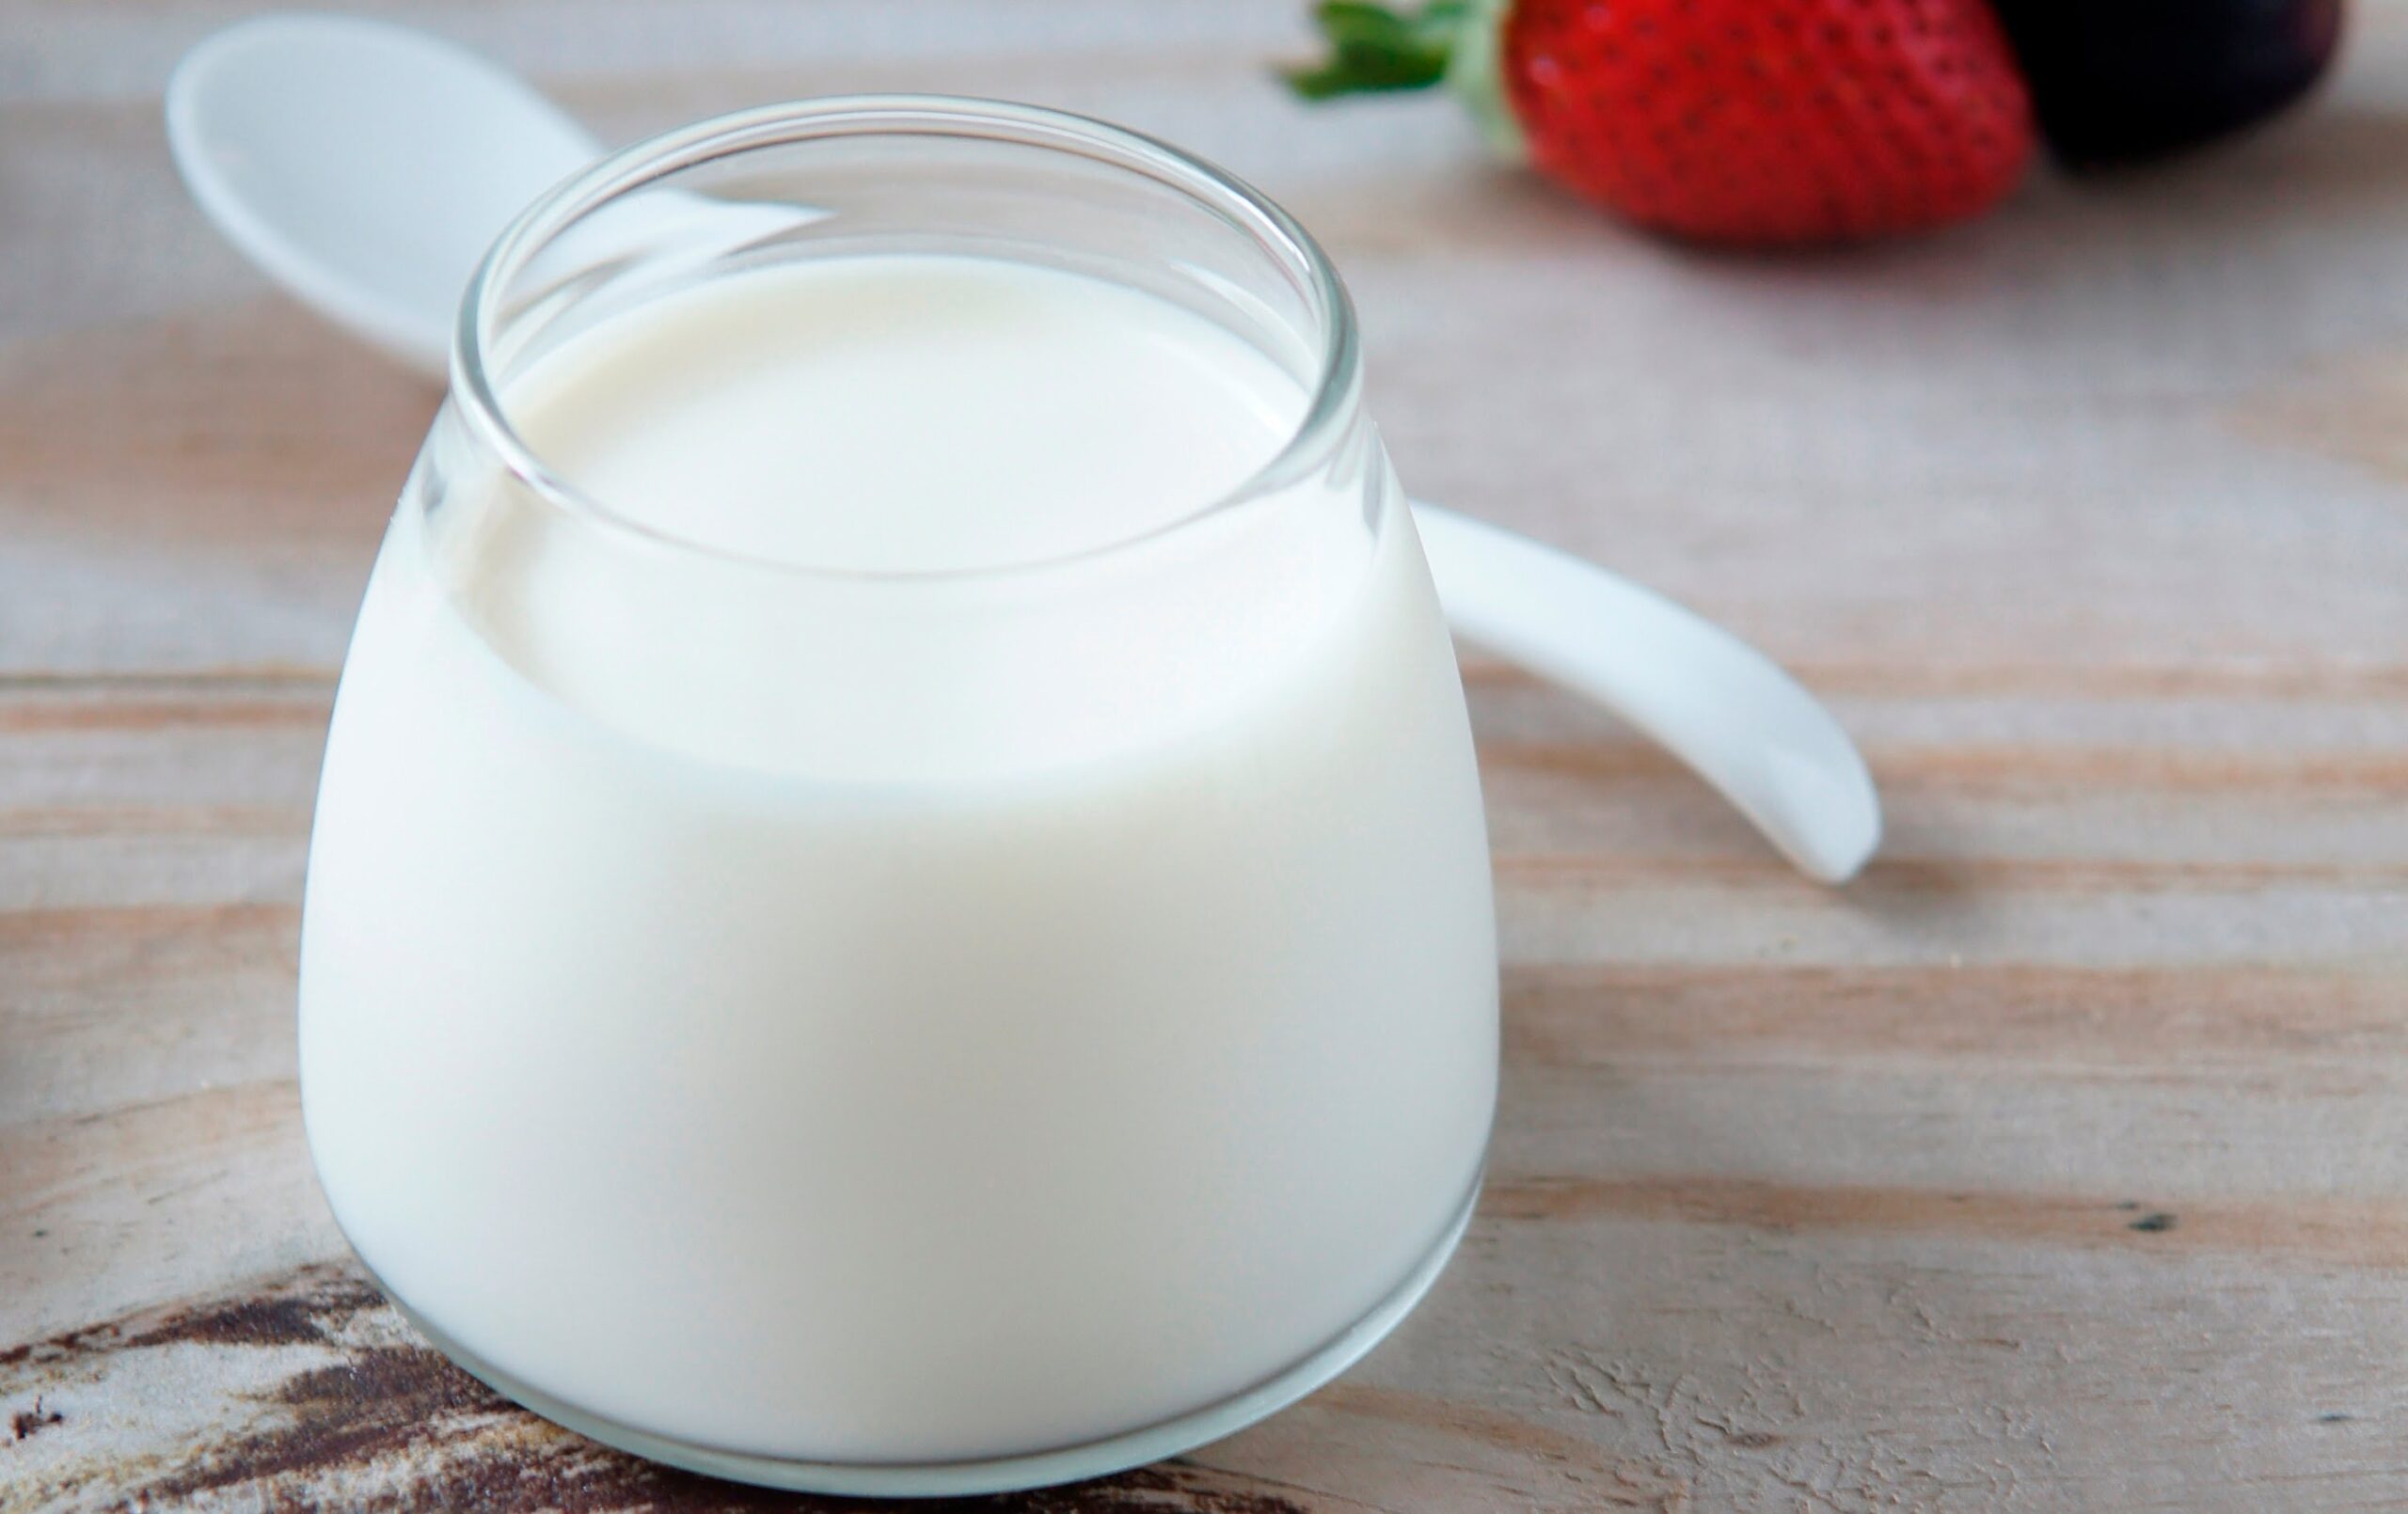 Hướng dẫn cách làm sữa chua từ men probiotic cho bé vô cùng đơn giản